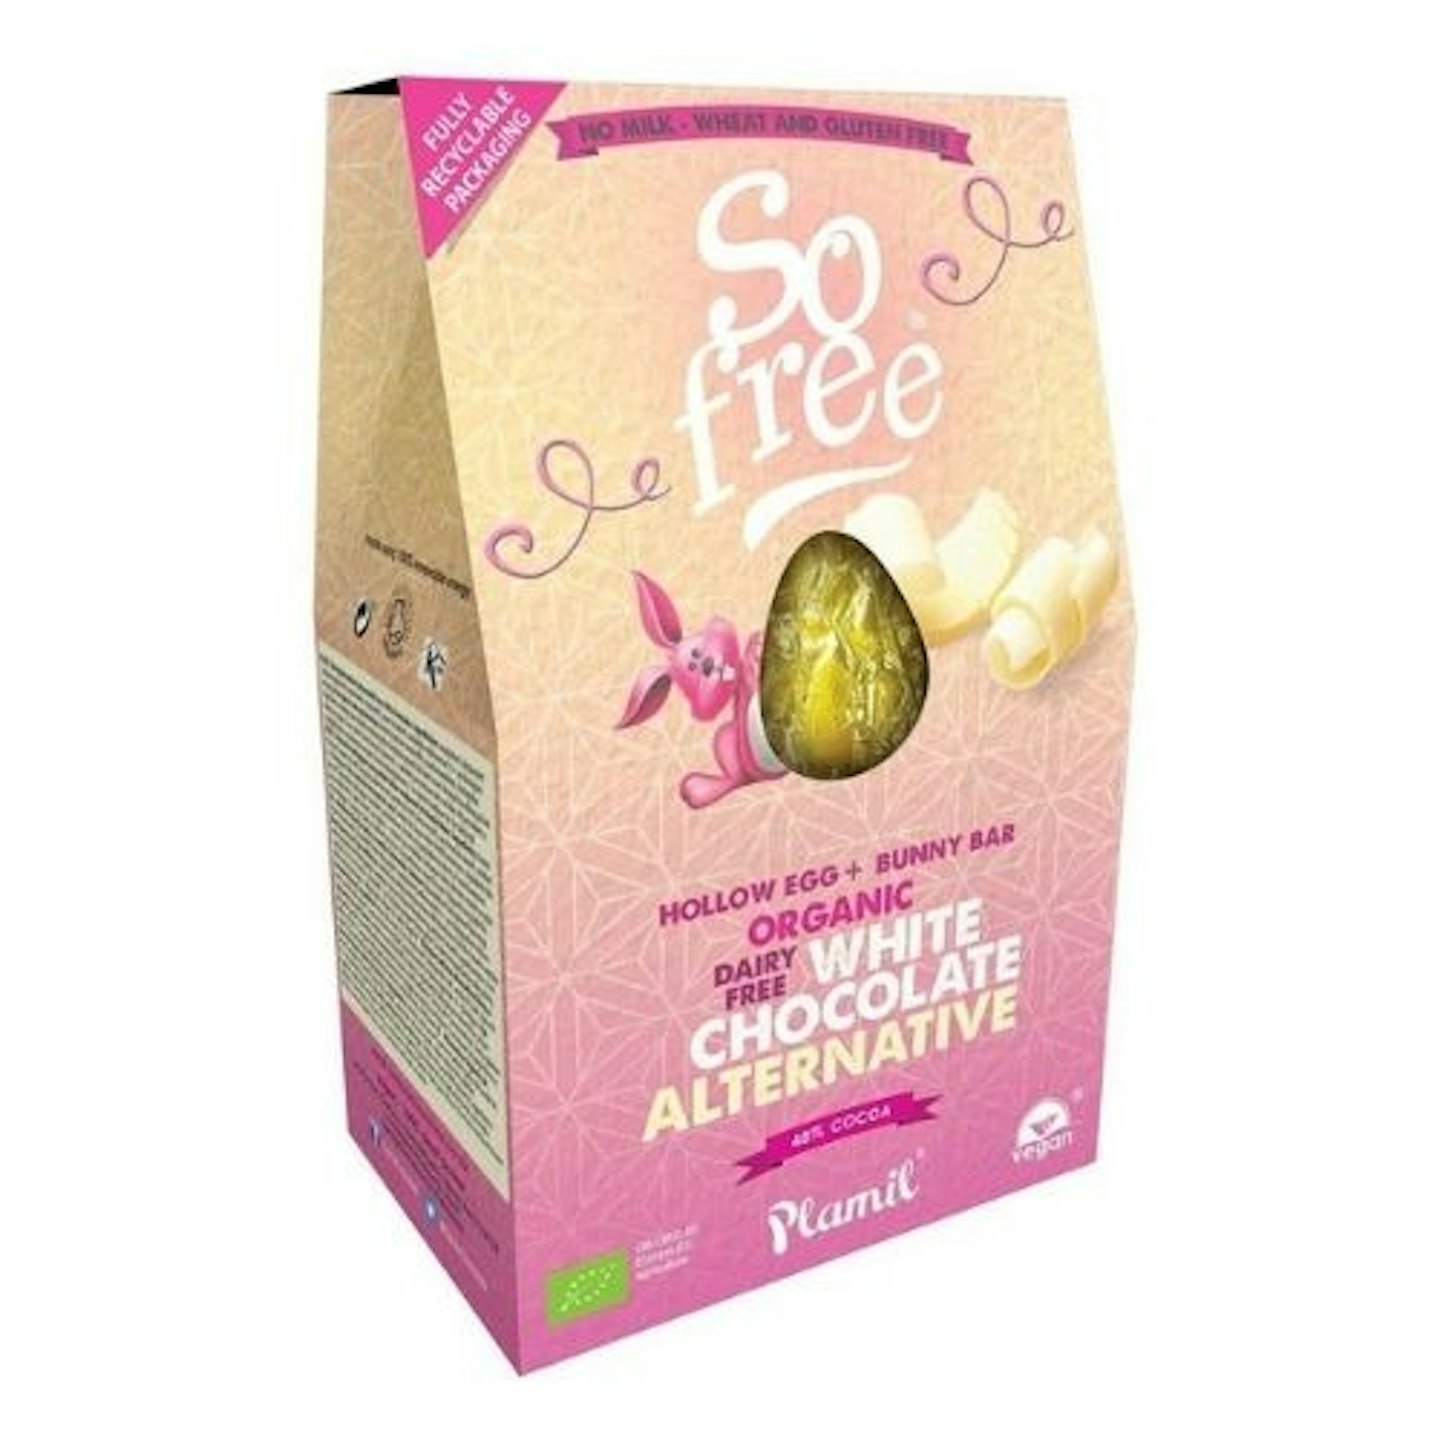 Plamil So Free White Chocolate Alternative Easter Egg